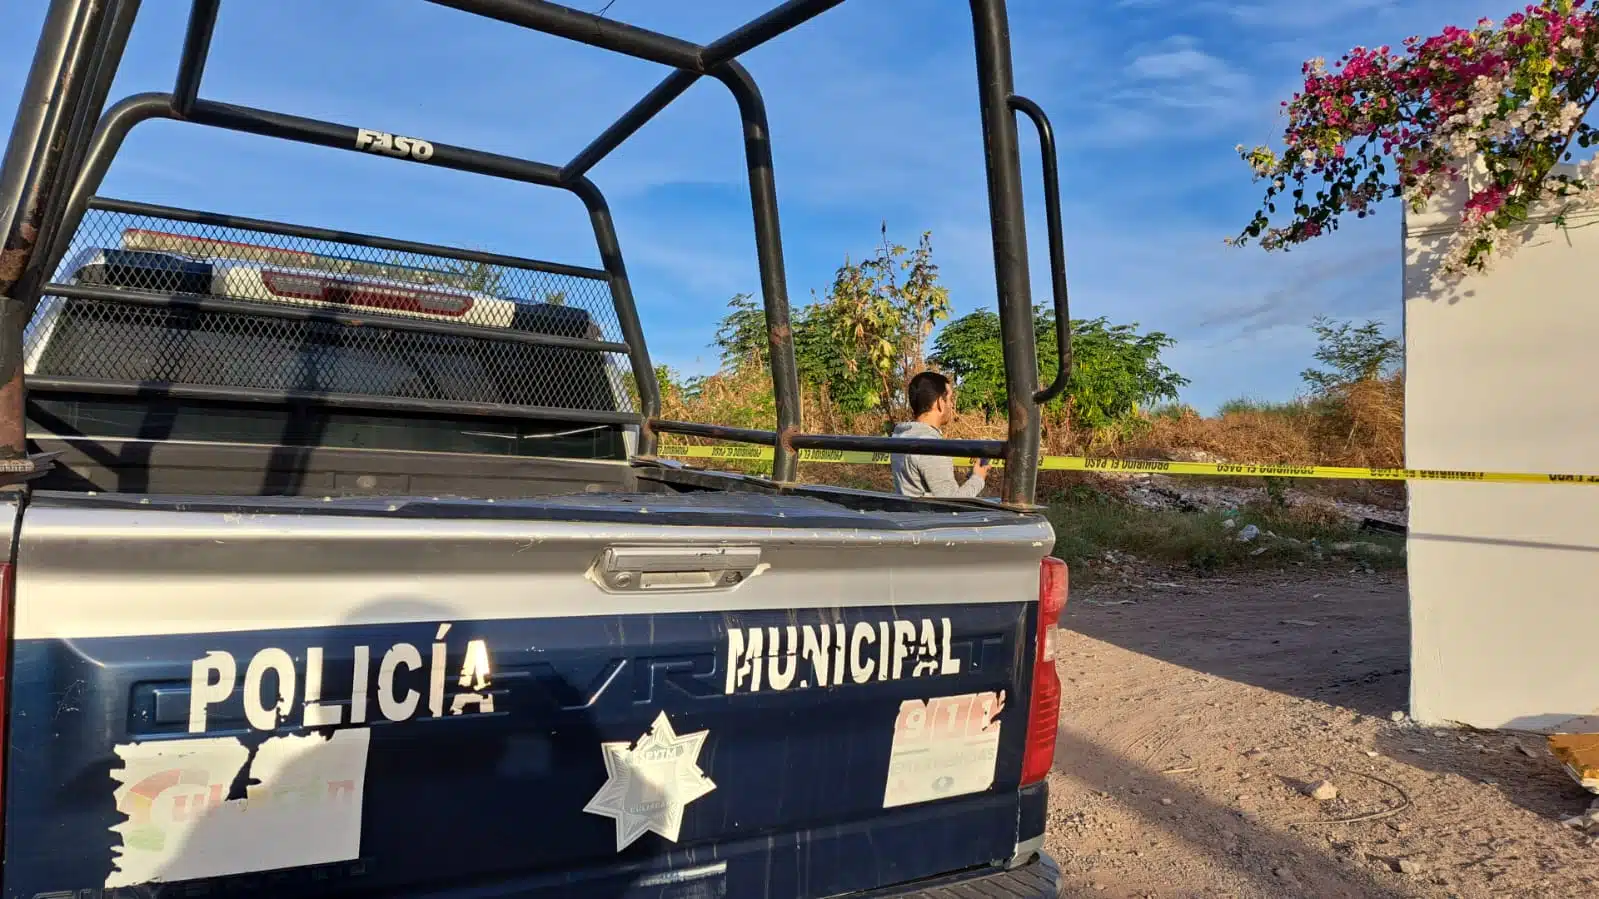 Camioneta de la Policía Municipal y cinta amarilla delimitando el área donde se encontró el cuerpo de un hombre asesinado en Culiacán